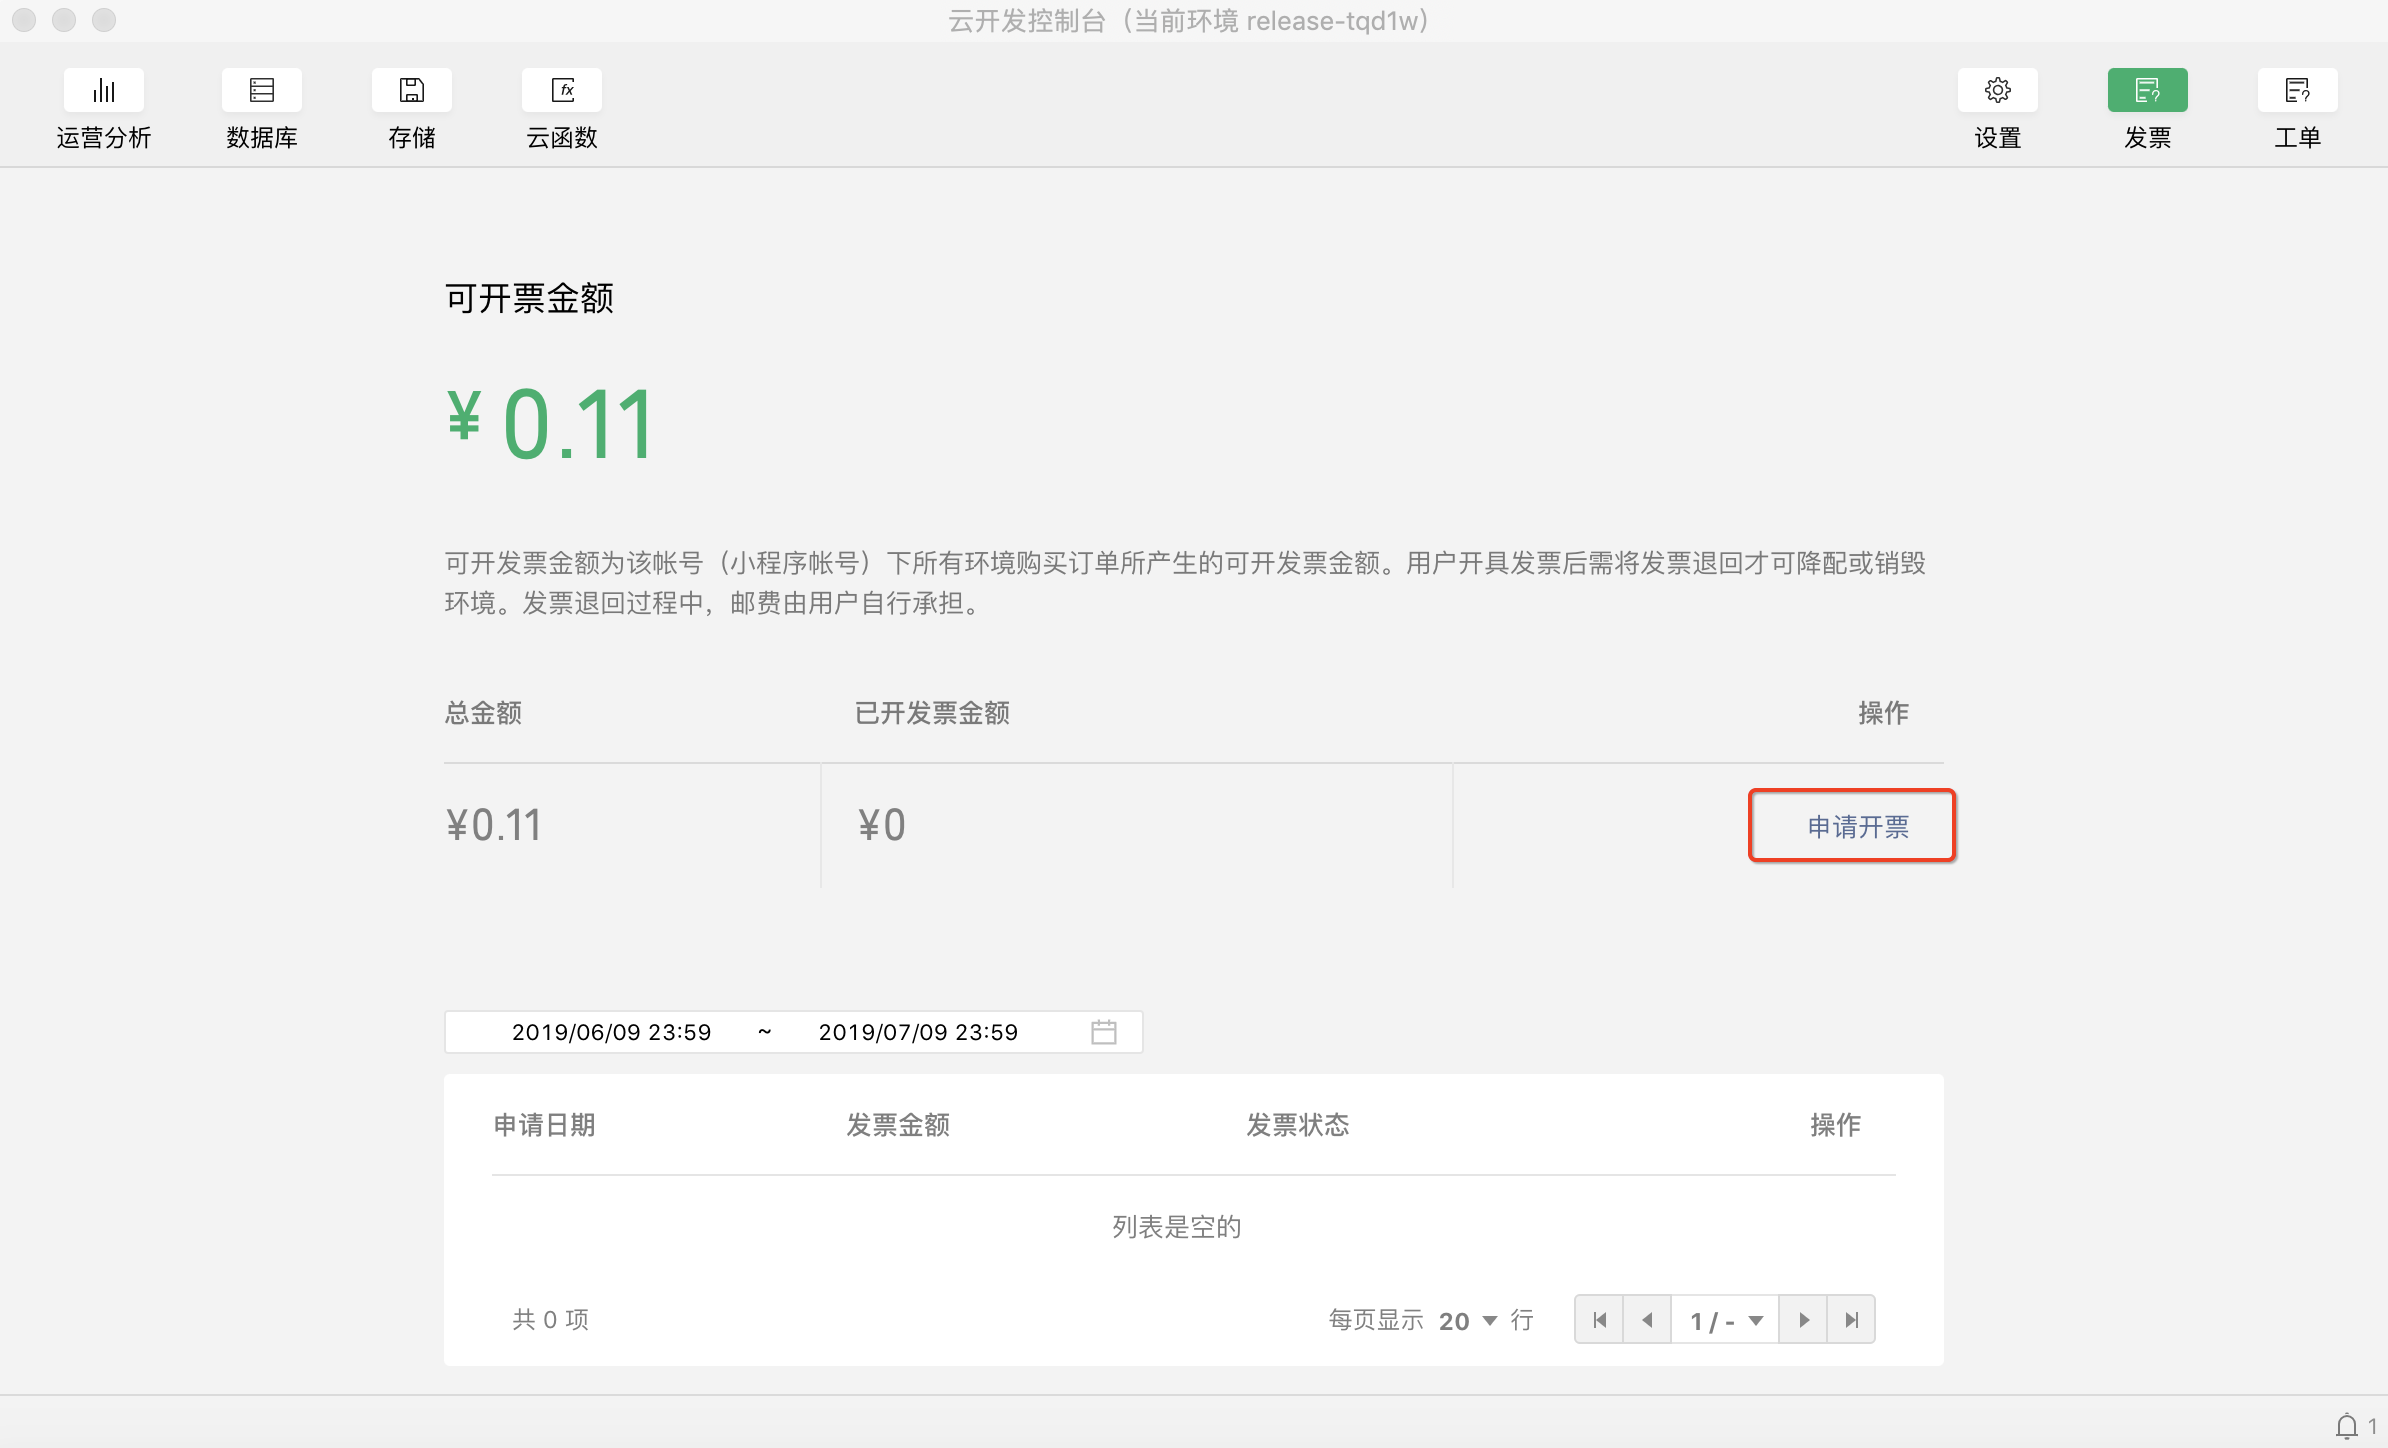 WeChat small program cloud development invoice management